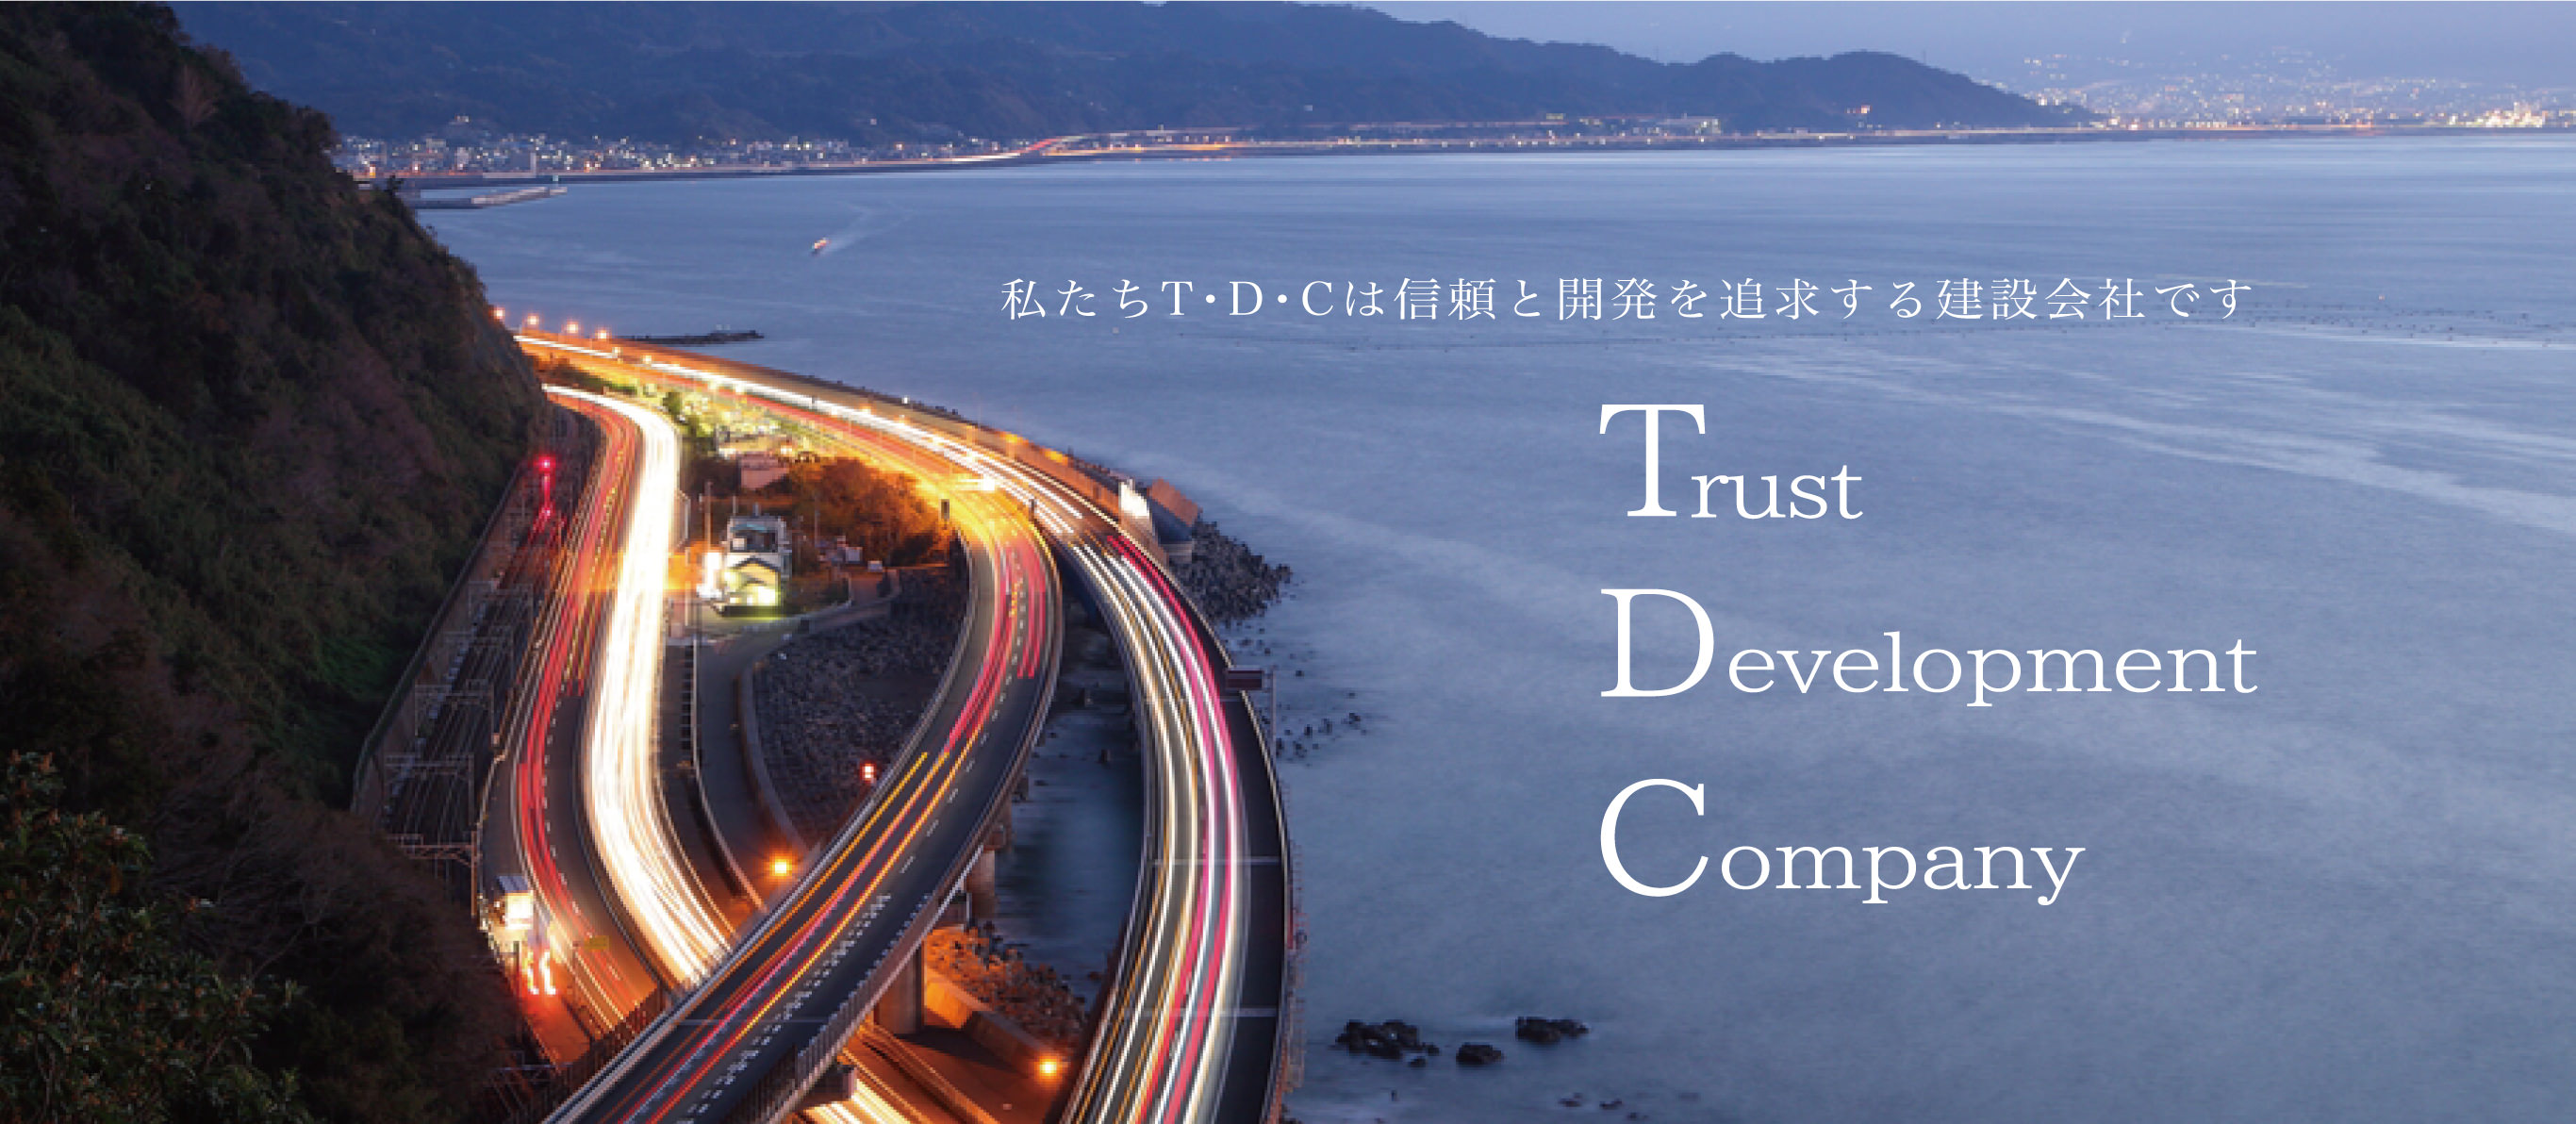 私たちTDCは信頼と開発を追求する建設会社です